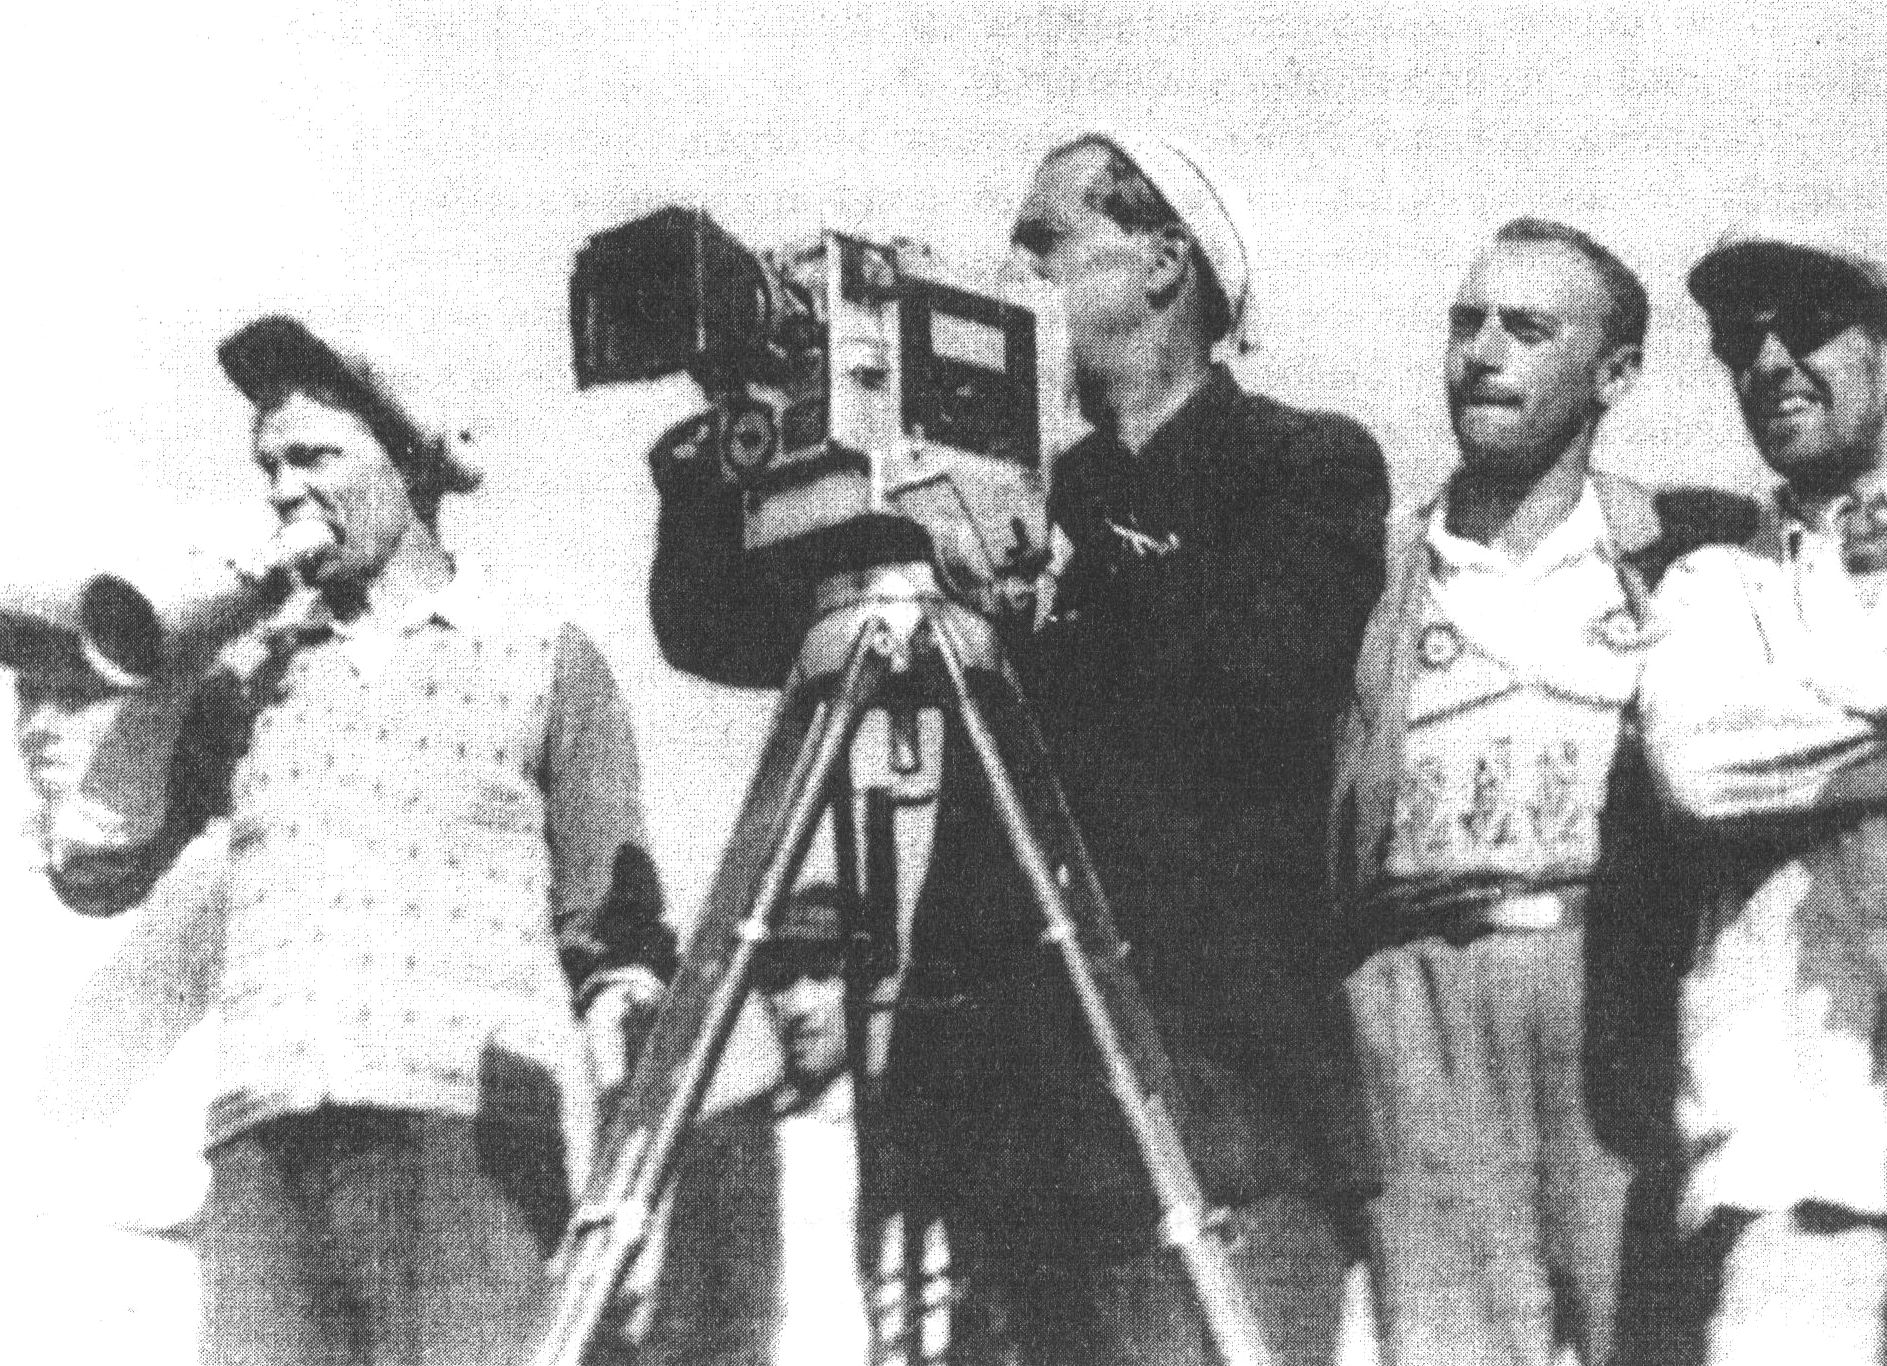 Ни съёмках фильма «Крупная неприятность». Август 1929. Слева направо: М.С. Каростин (сорежиссёр), В. Солодовников (кинооператор), И. Гордон (сценарист, ассистент), А.Д. Попов, (режиссёр)